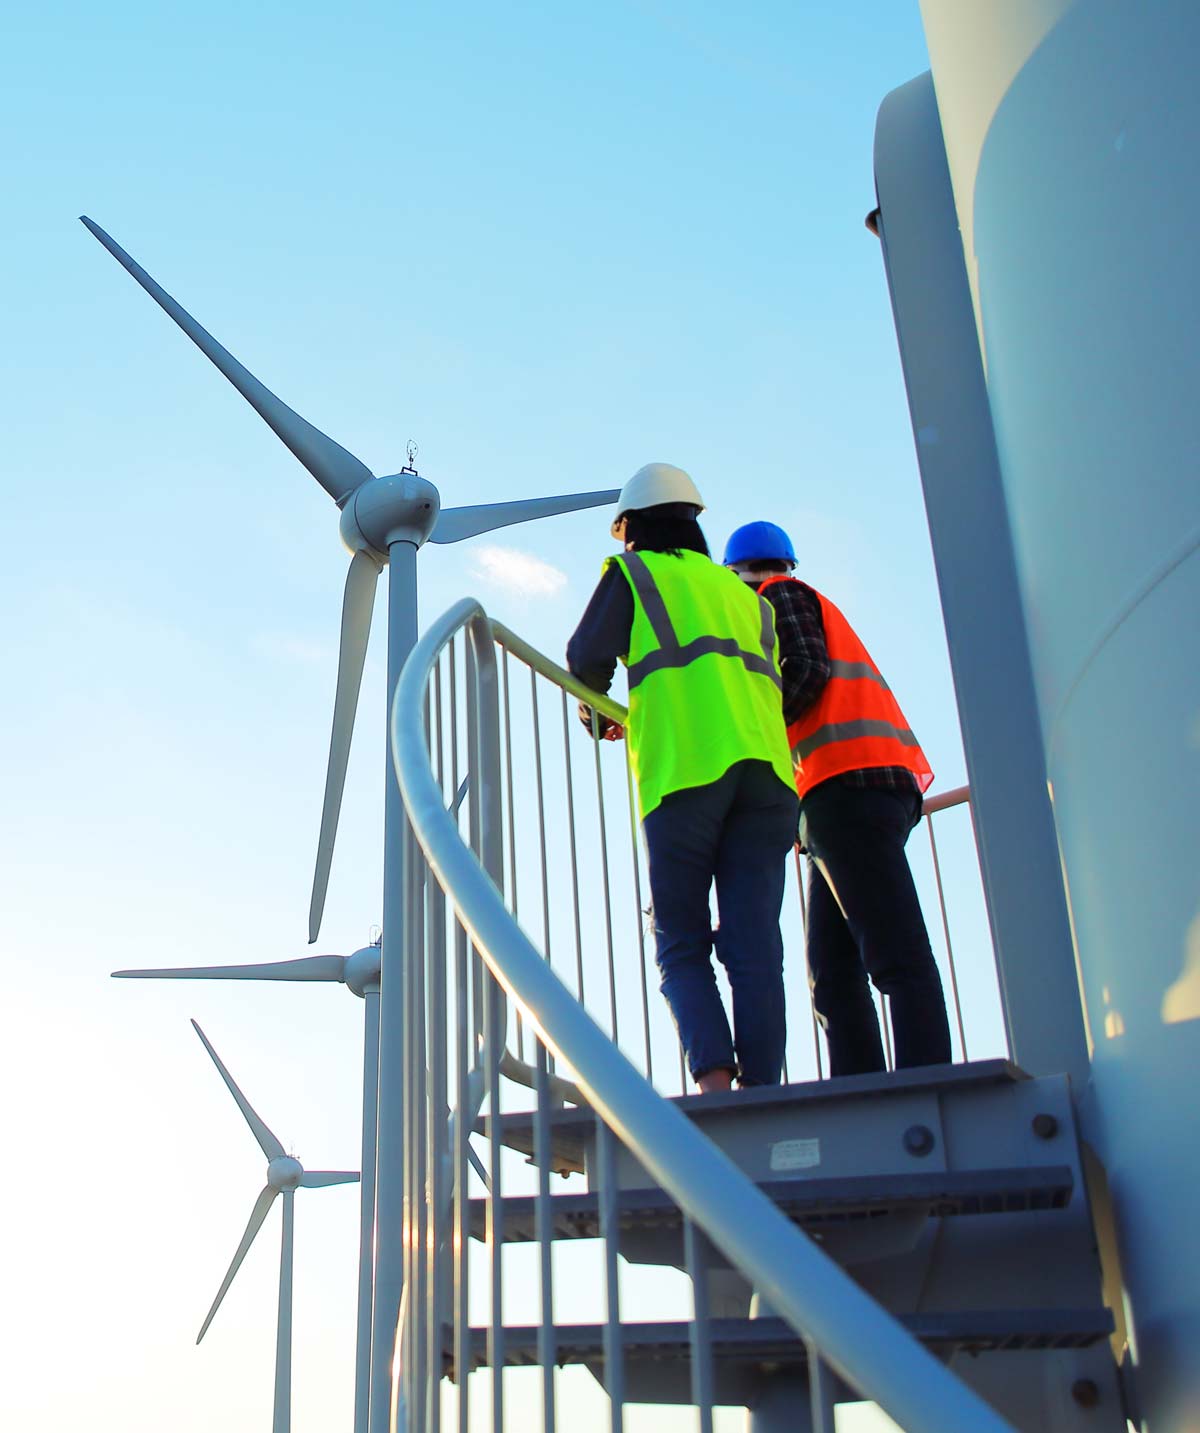 Field staff on-site at a wind farm